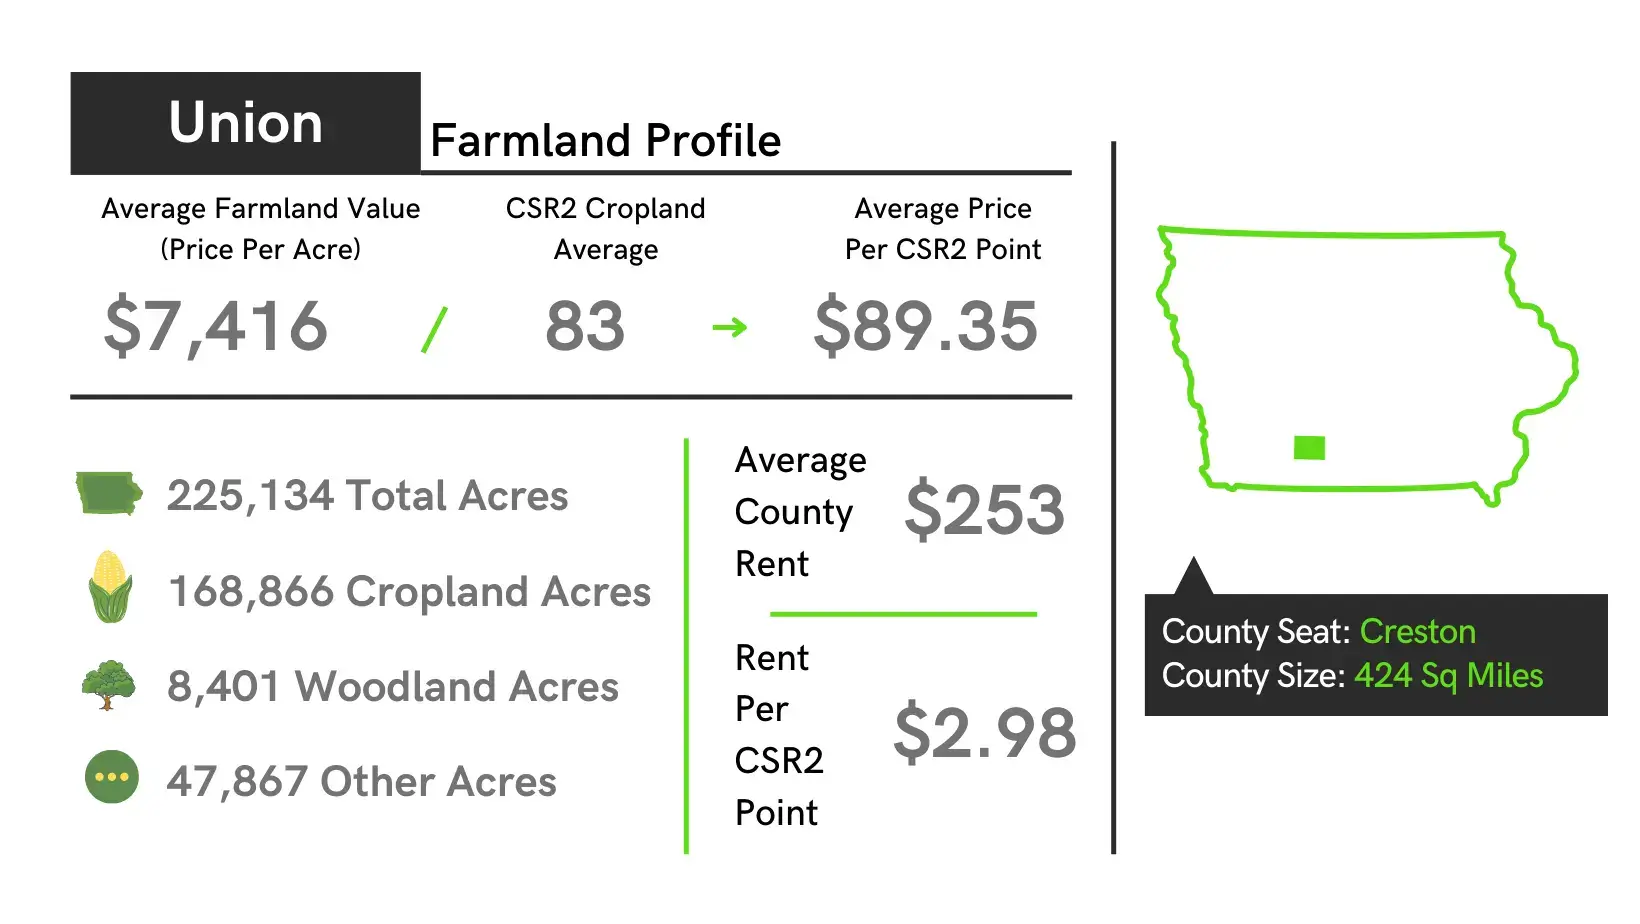 Union County Farmland Profile